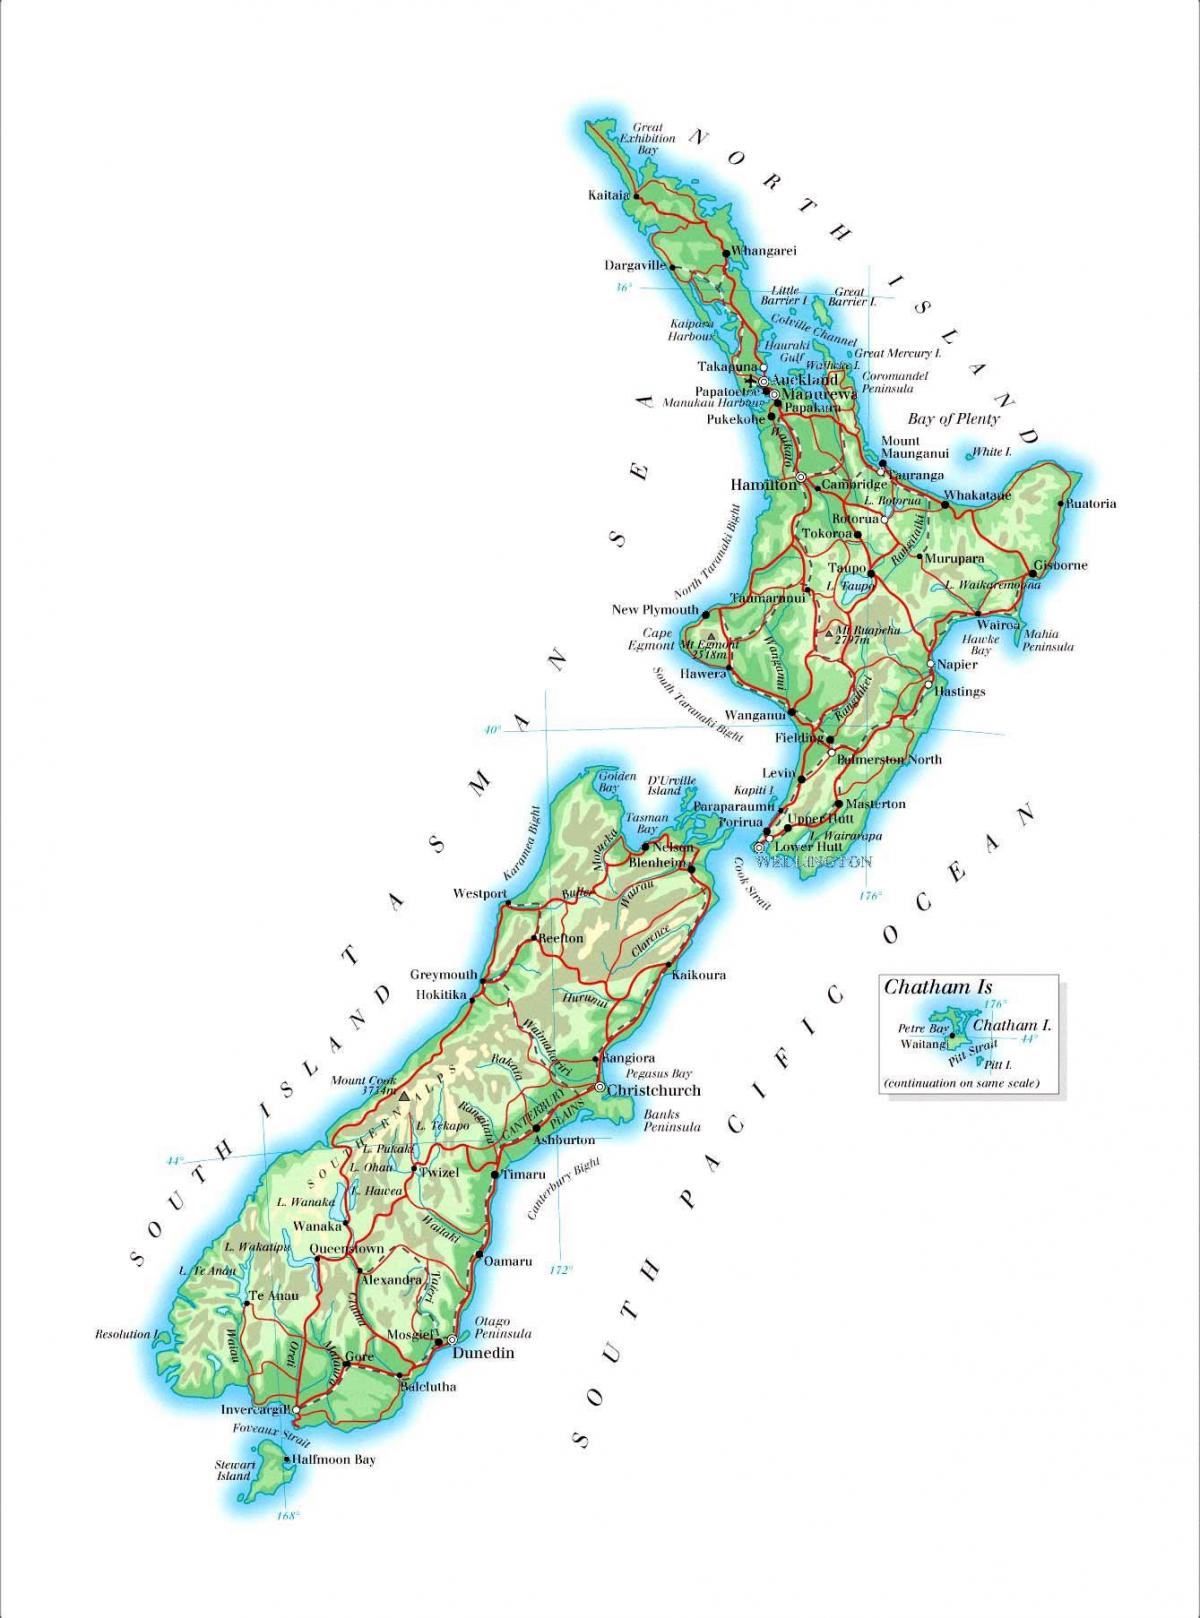 خريطة كبيرة لنيوزيلندا